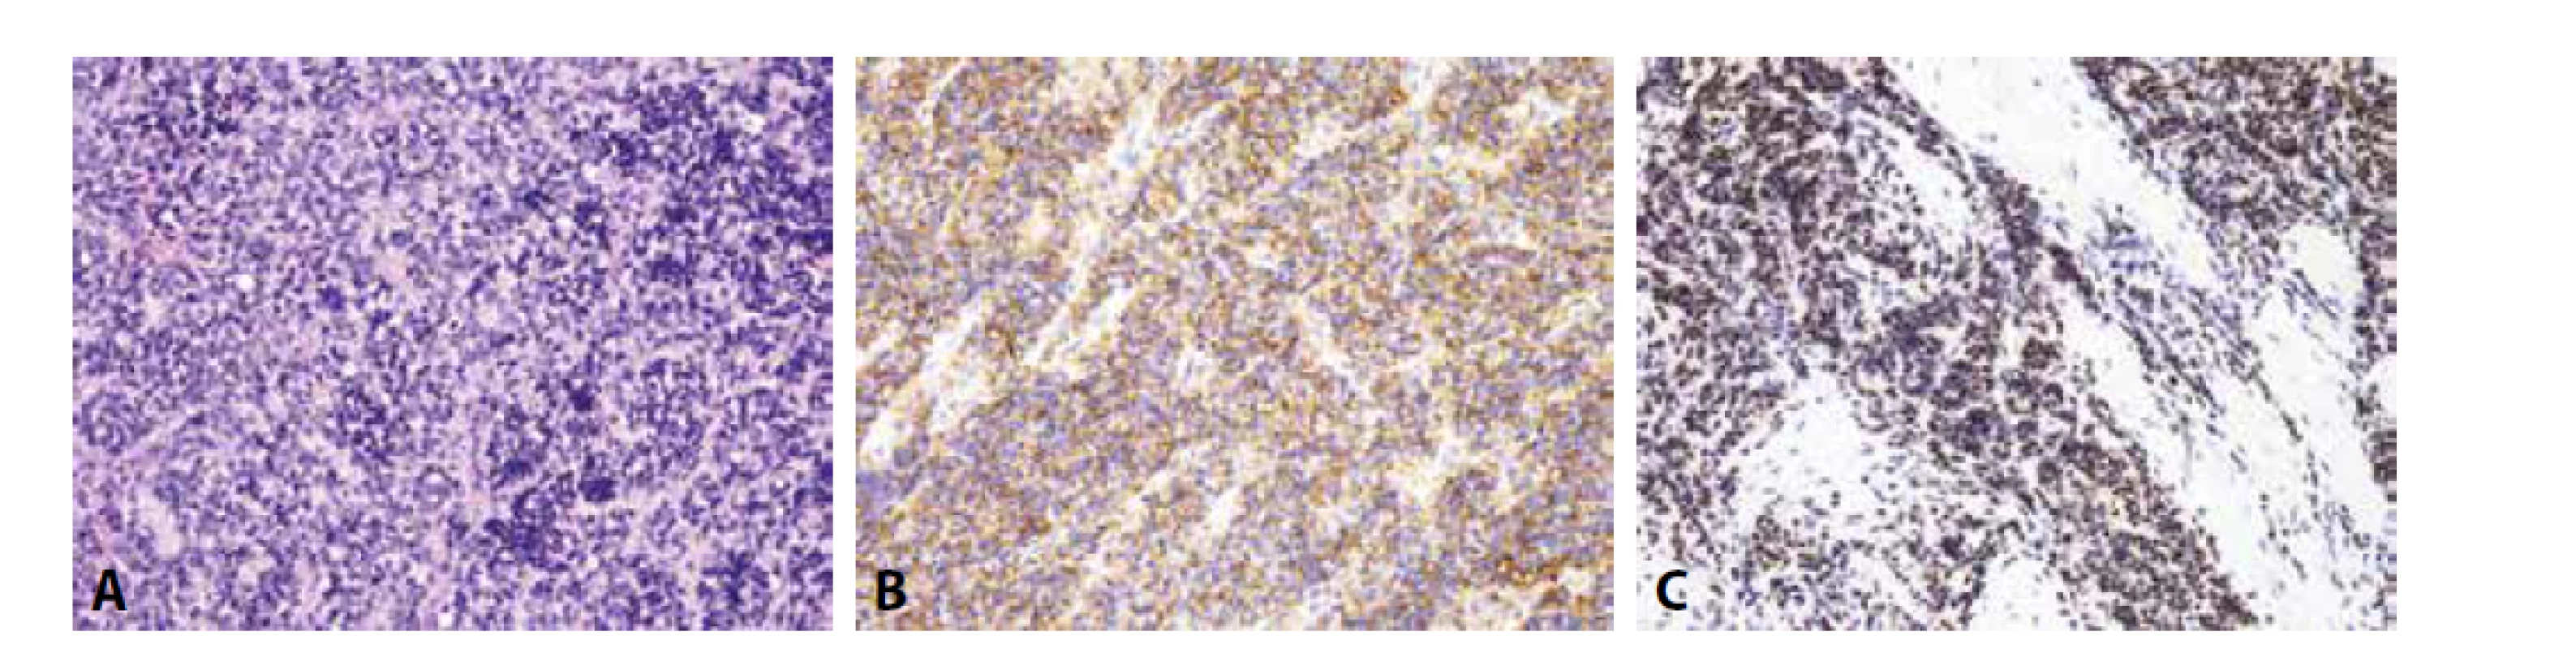 Ewingův sarkom. A) uniformní kulatobuněčný tumor (H&E); B) difúzní membránová exprese CD99; C) jaderná exprese Fli-1 (vše zvětšení
x200).